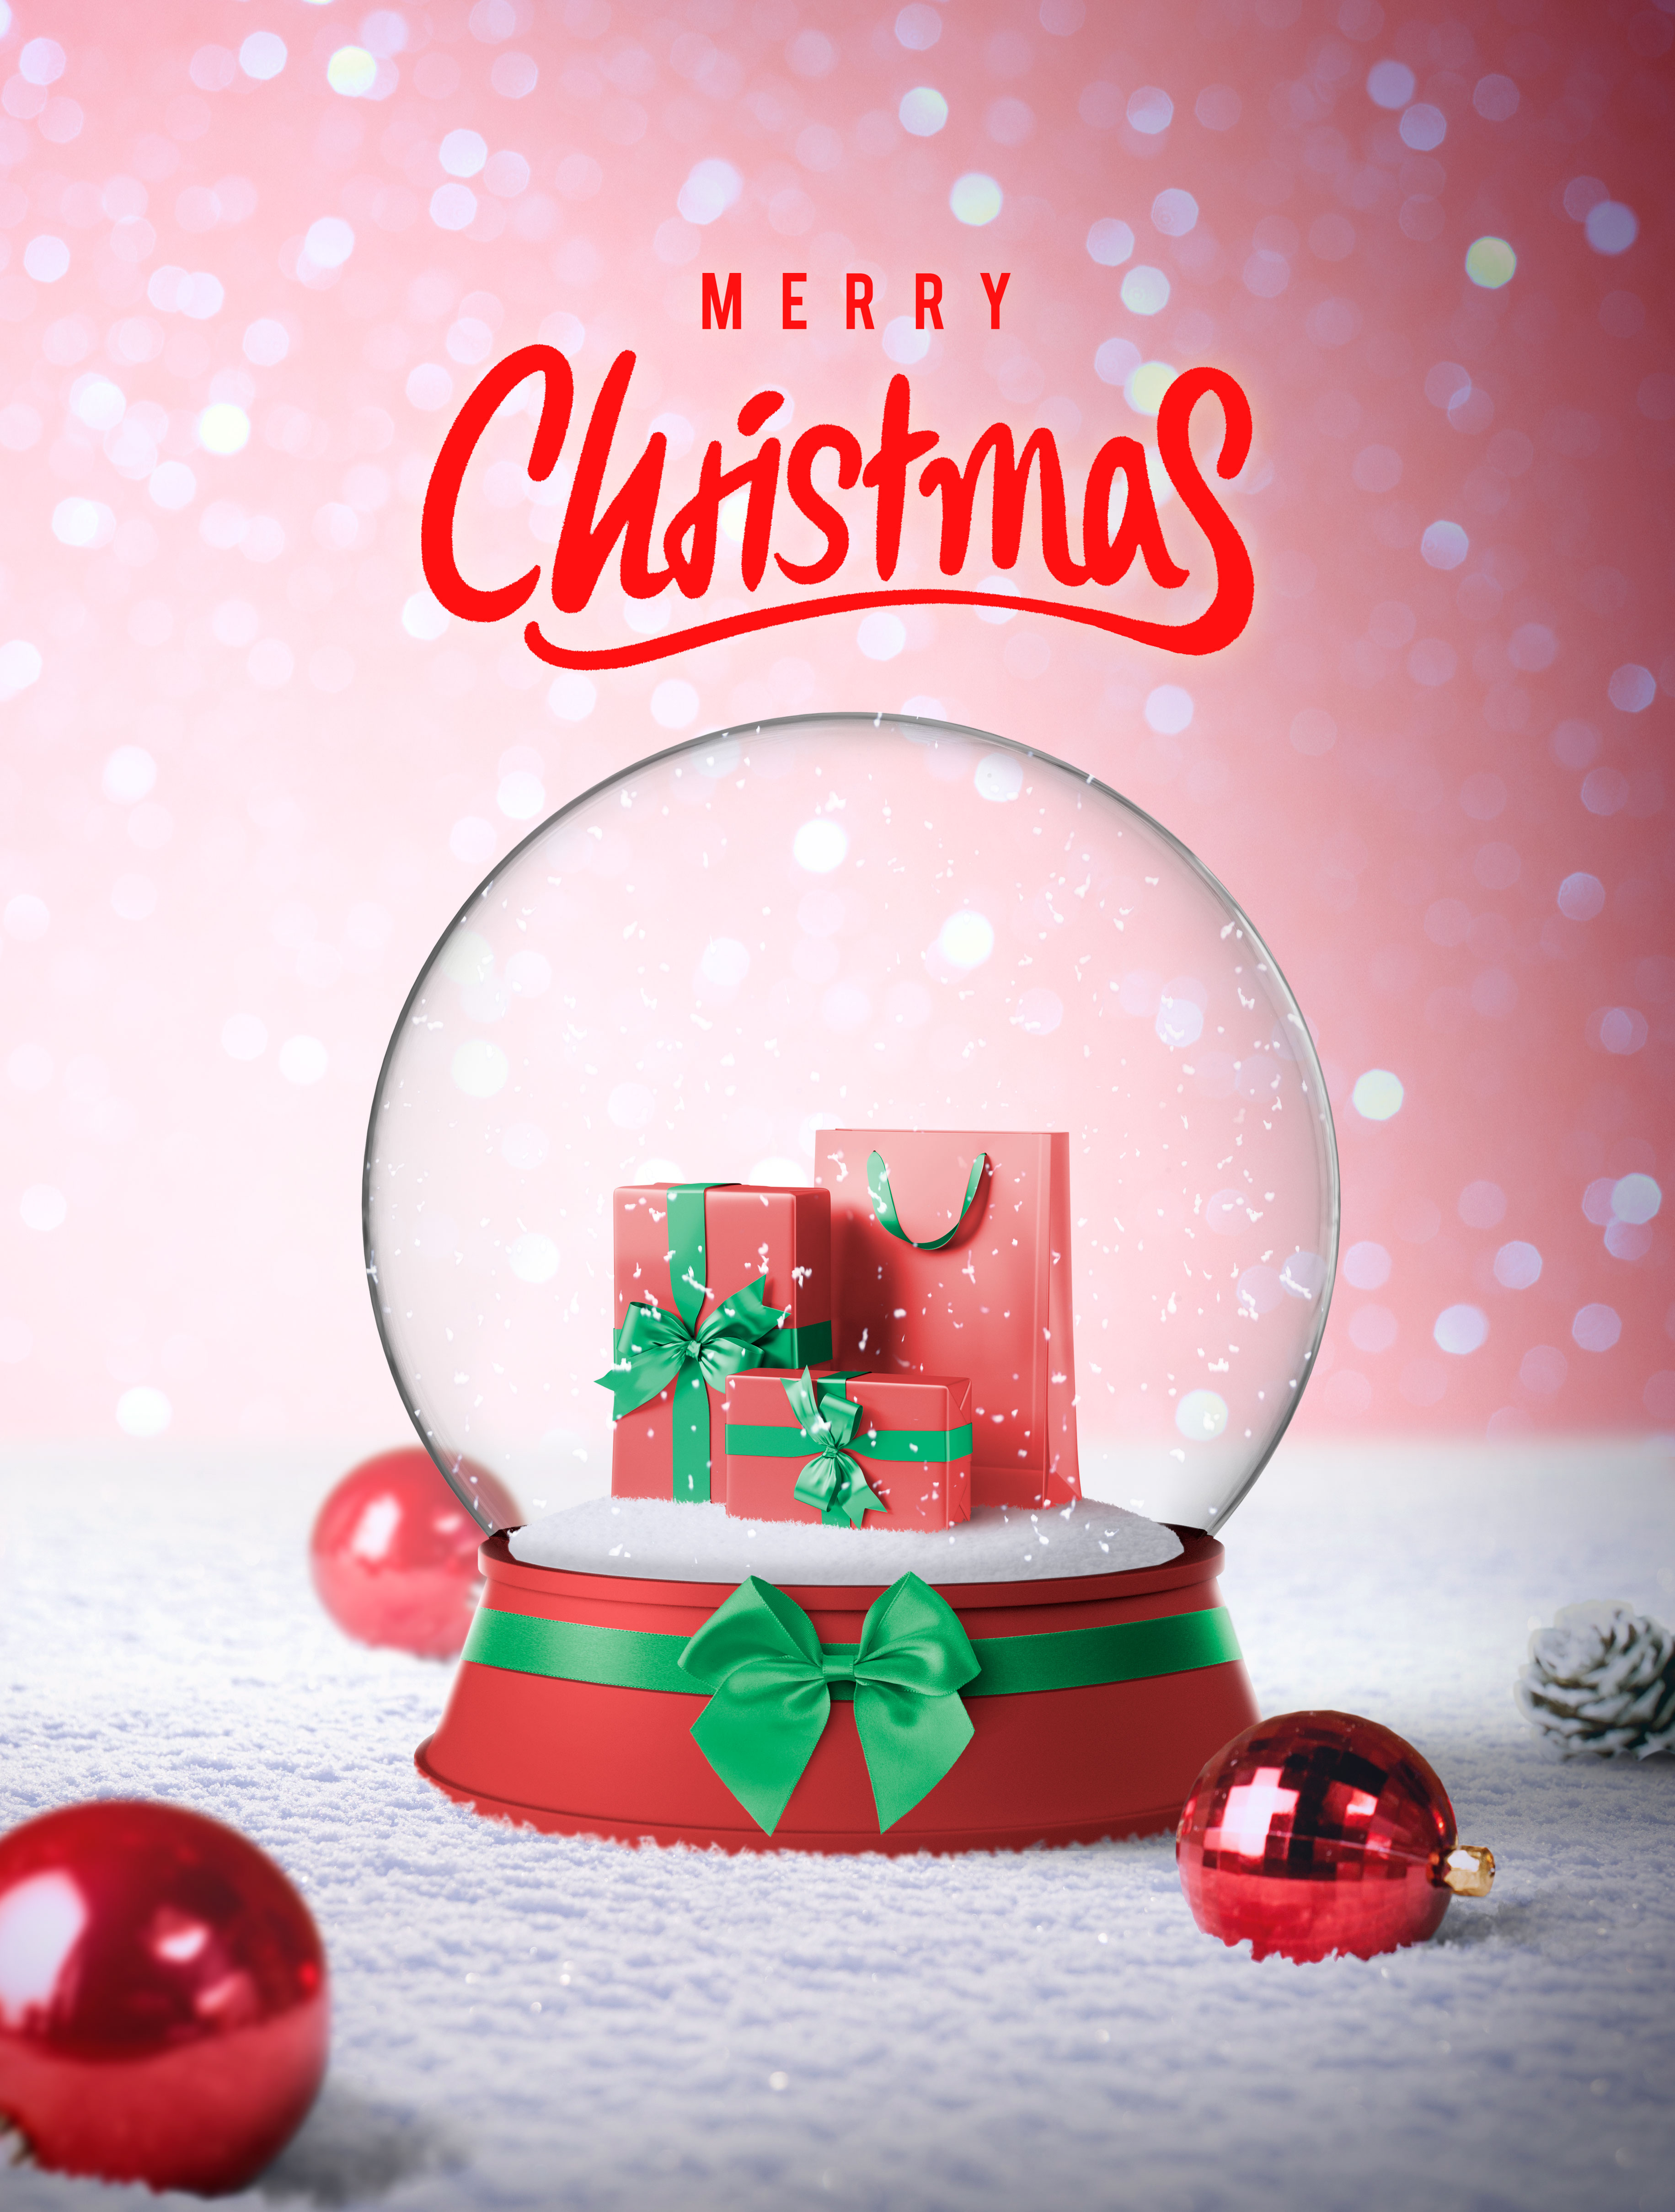 透明雪球圣诞礼物主题海报设模板psd素材插图